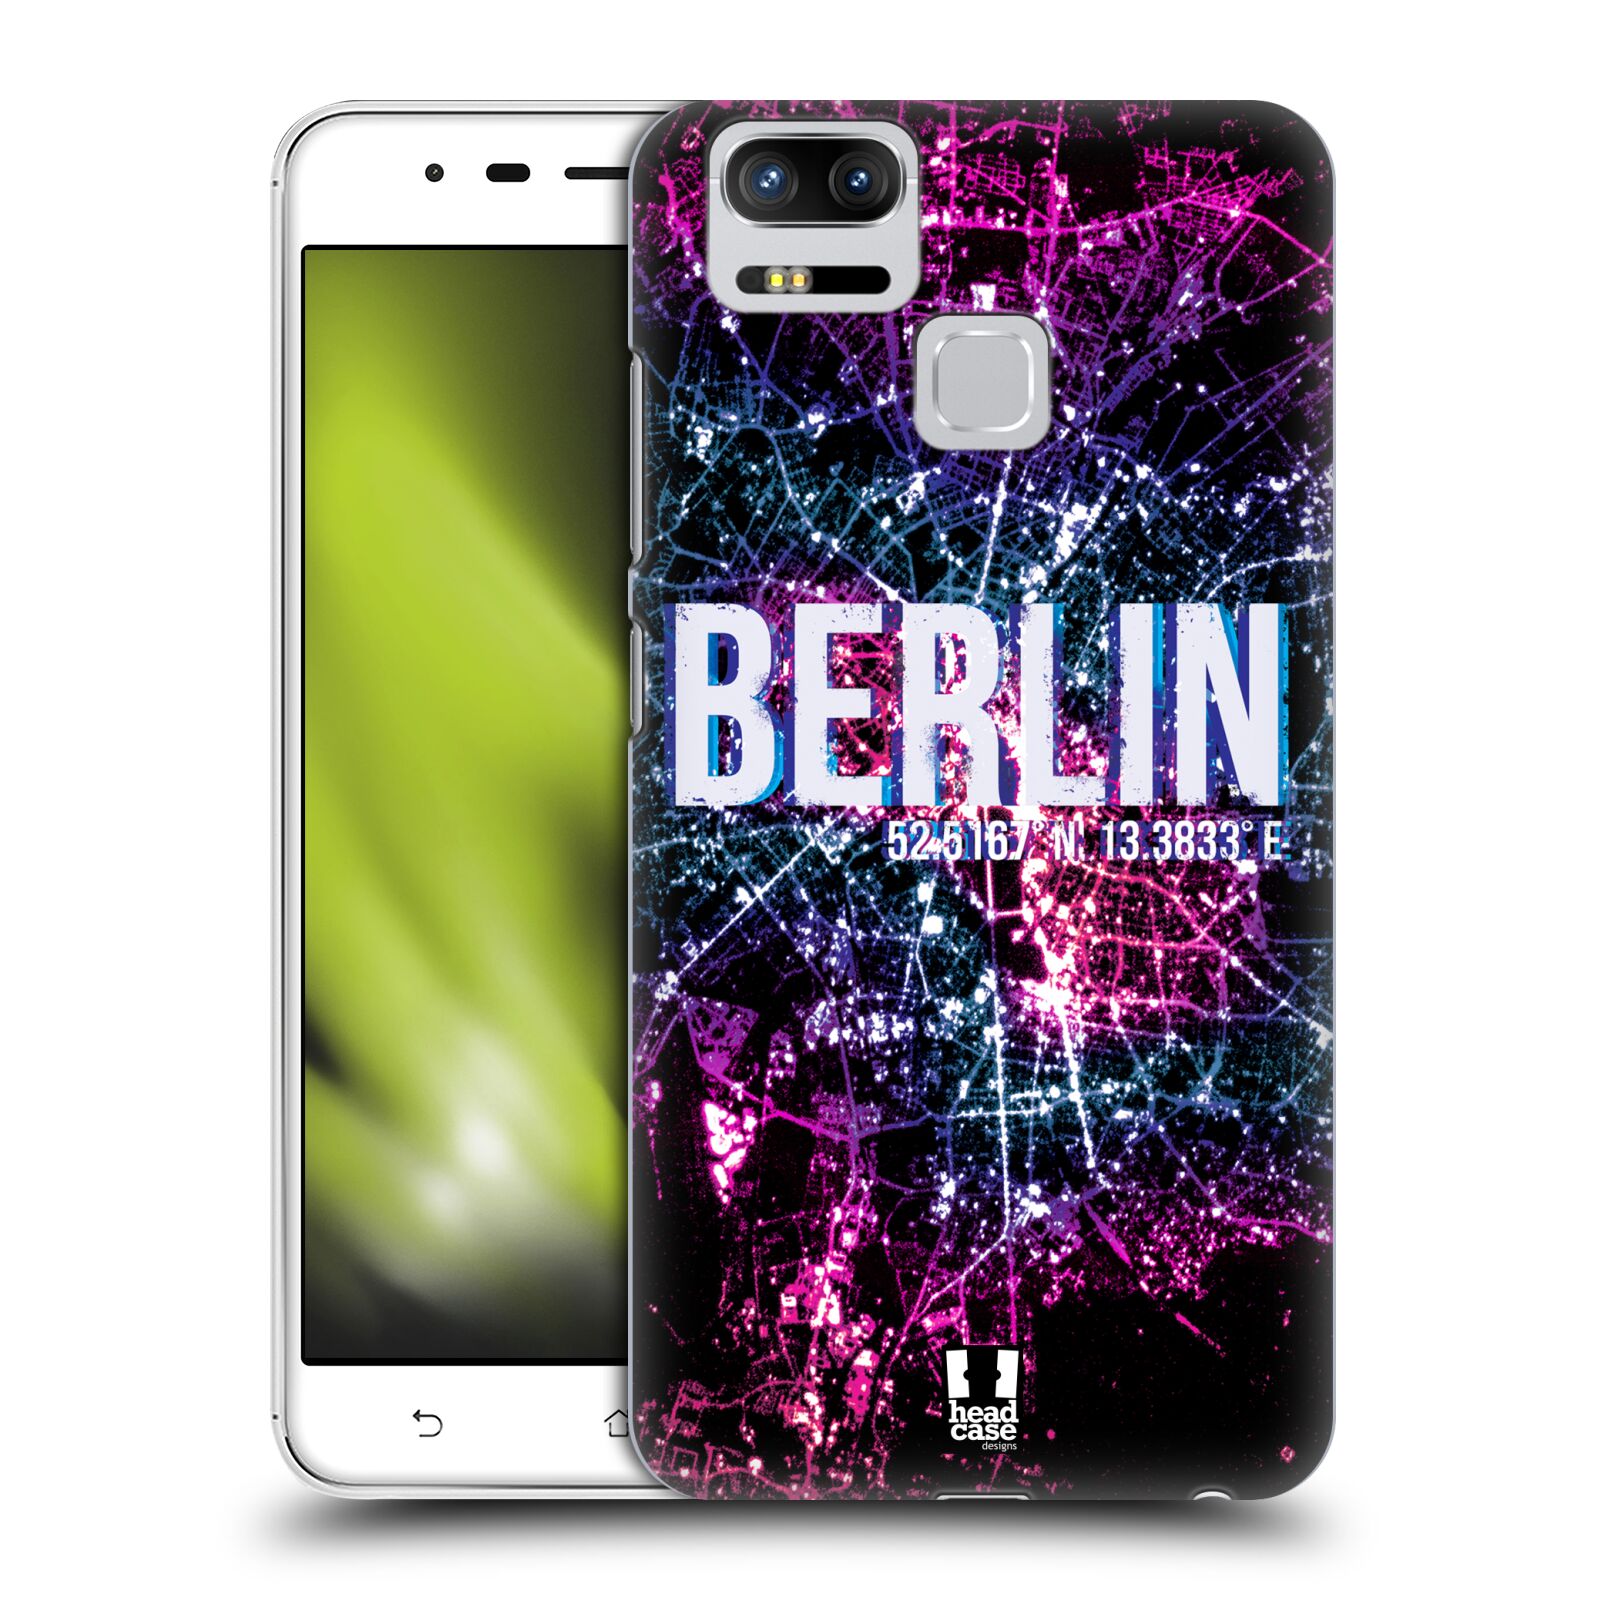 HEAD CASE plastový obal na mobil Asus Zenfone 3 Zoom ZE553KL vzor Světla známých měst, Satelitní snímky NĚMECKO, BERLÍN